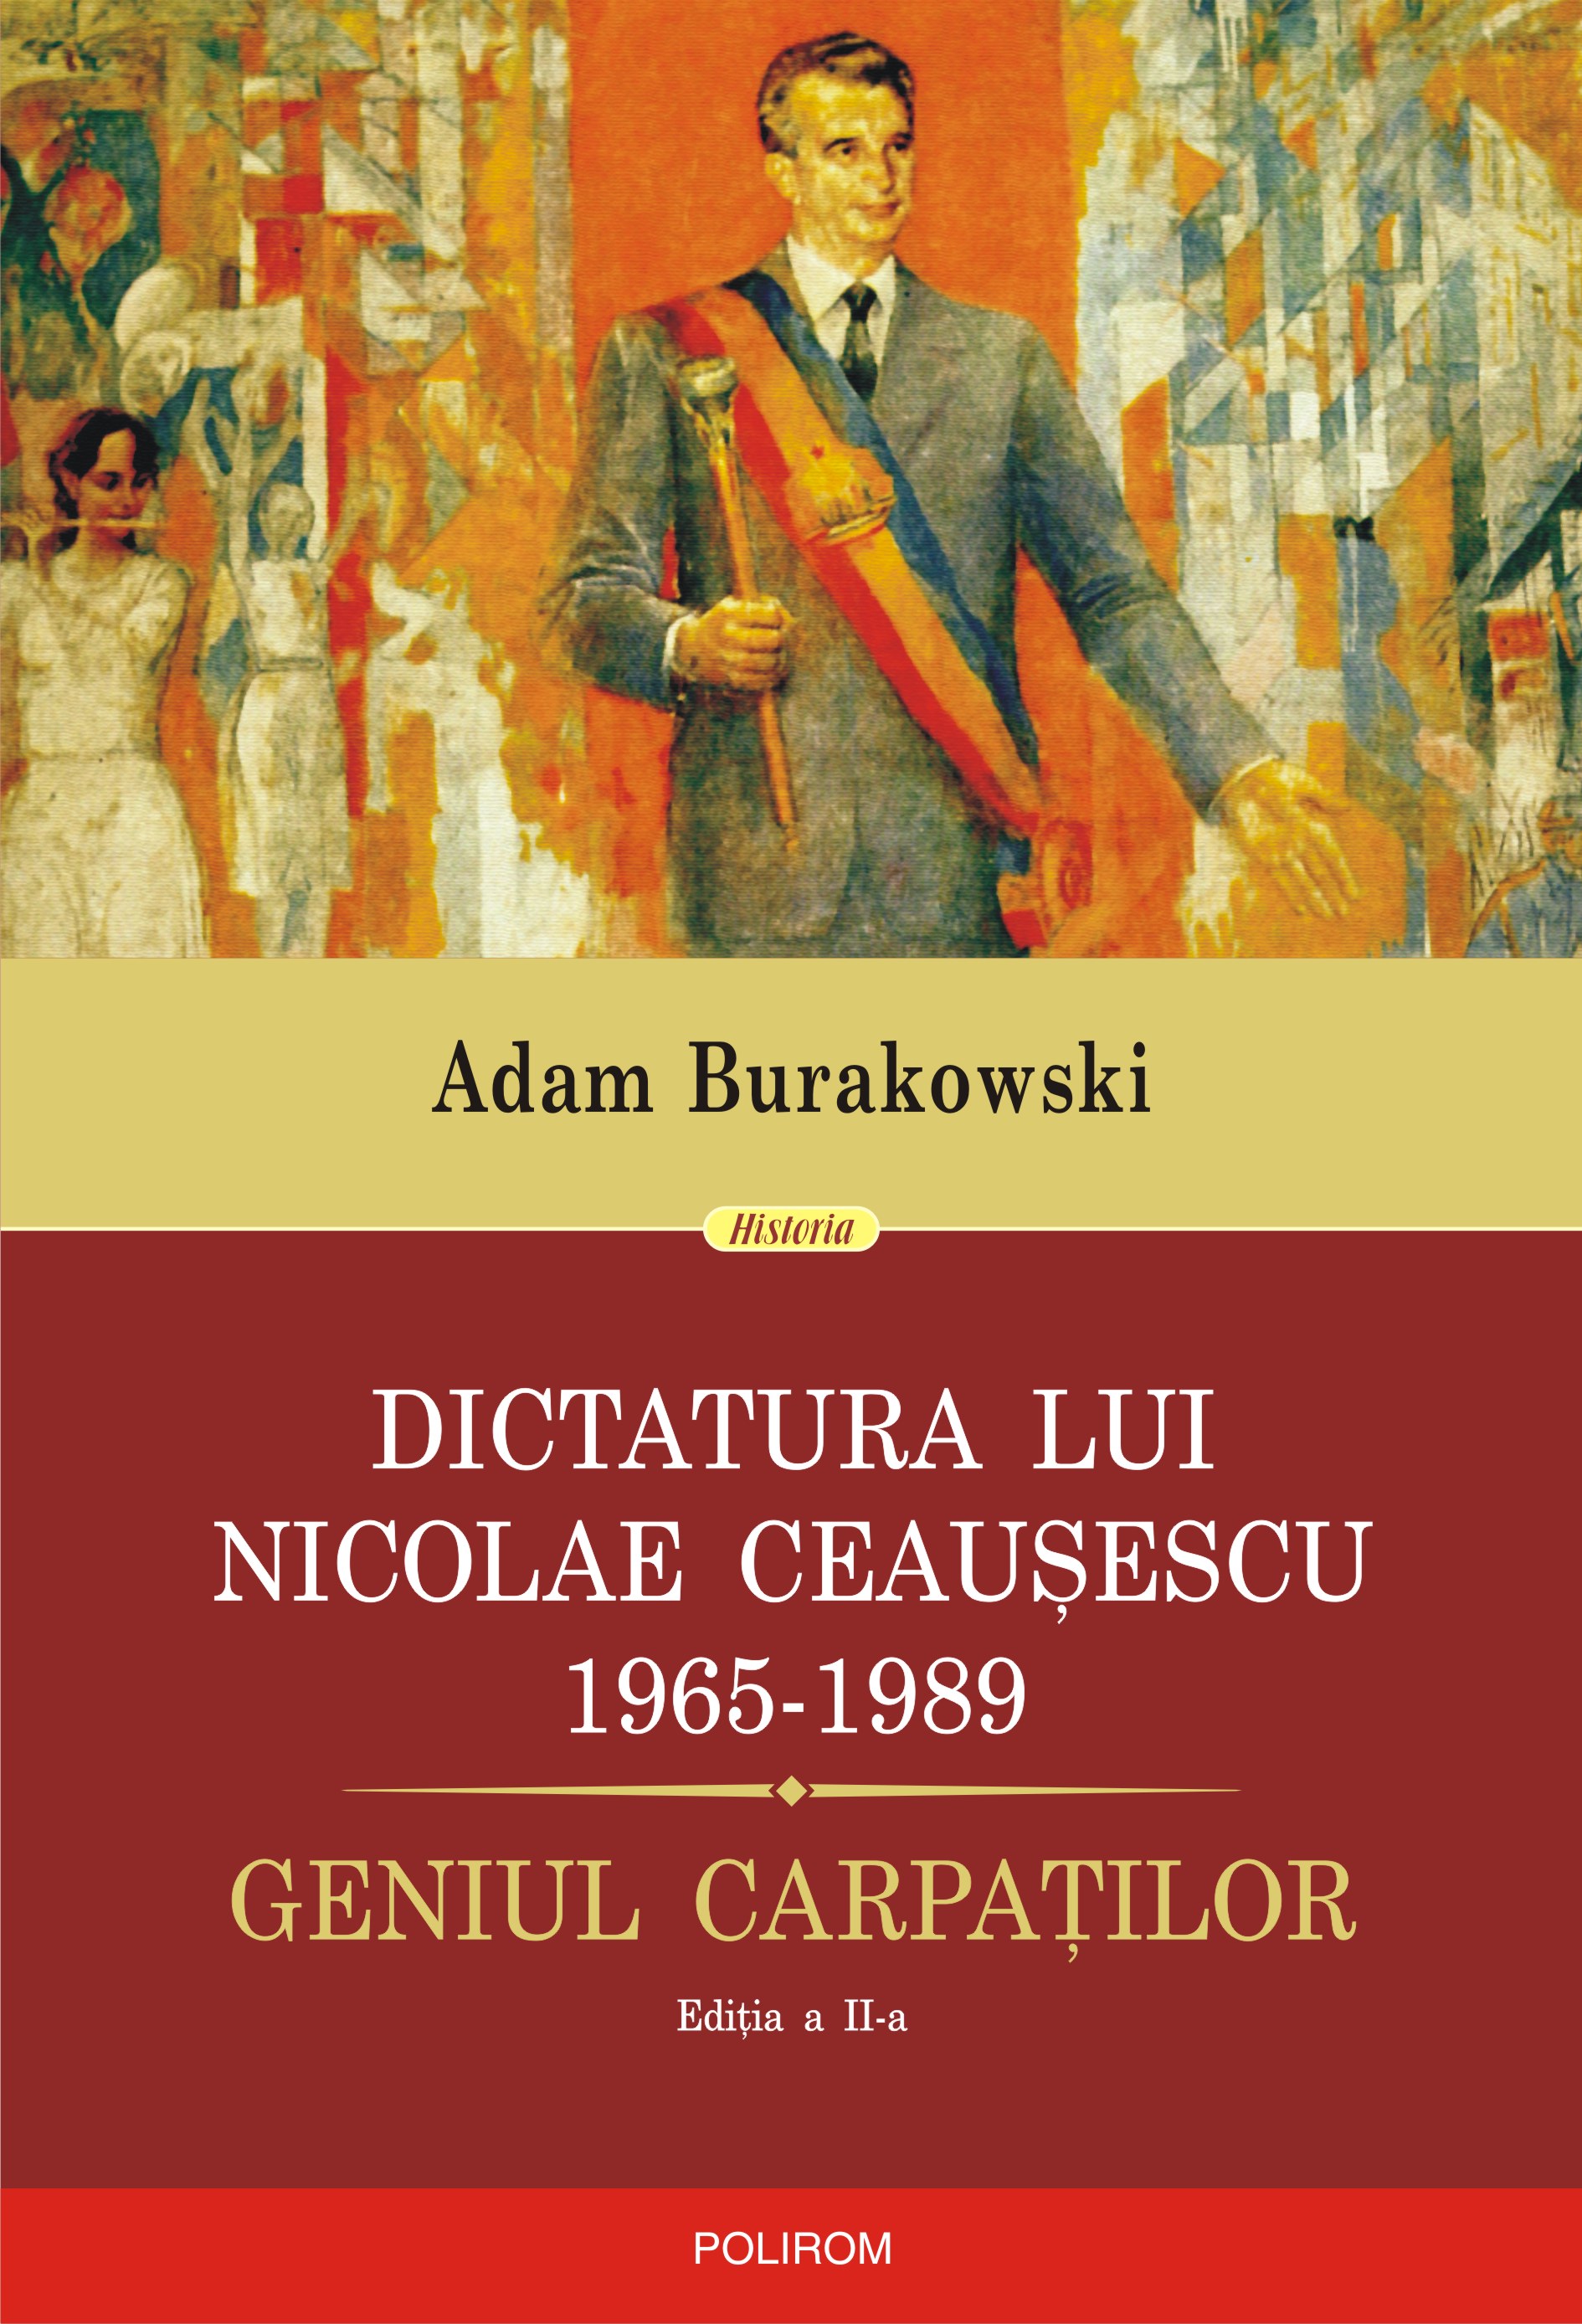 eBook Dictatura lui Nicolae Ceausescu (1965-1989). Geniul Carpatilor  - Adam Burakowski